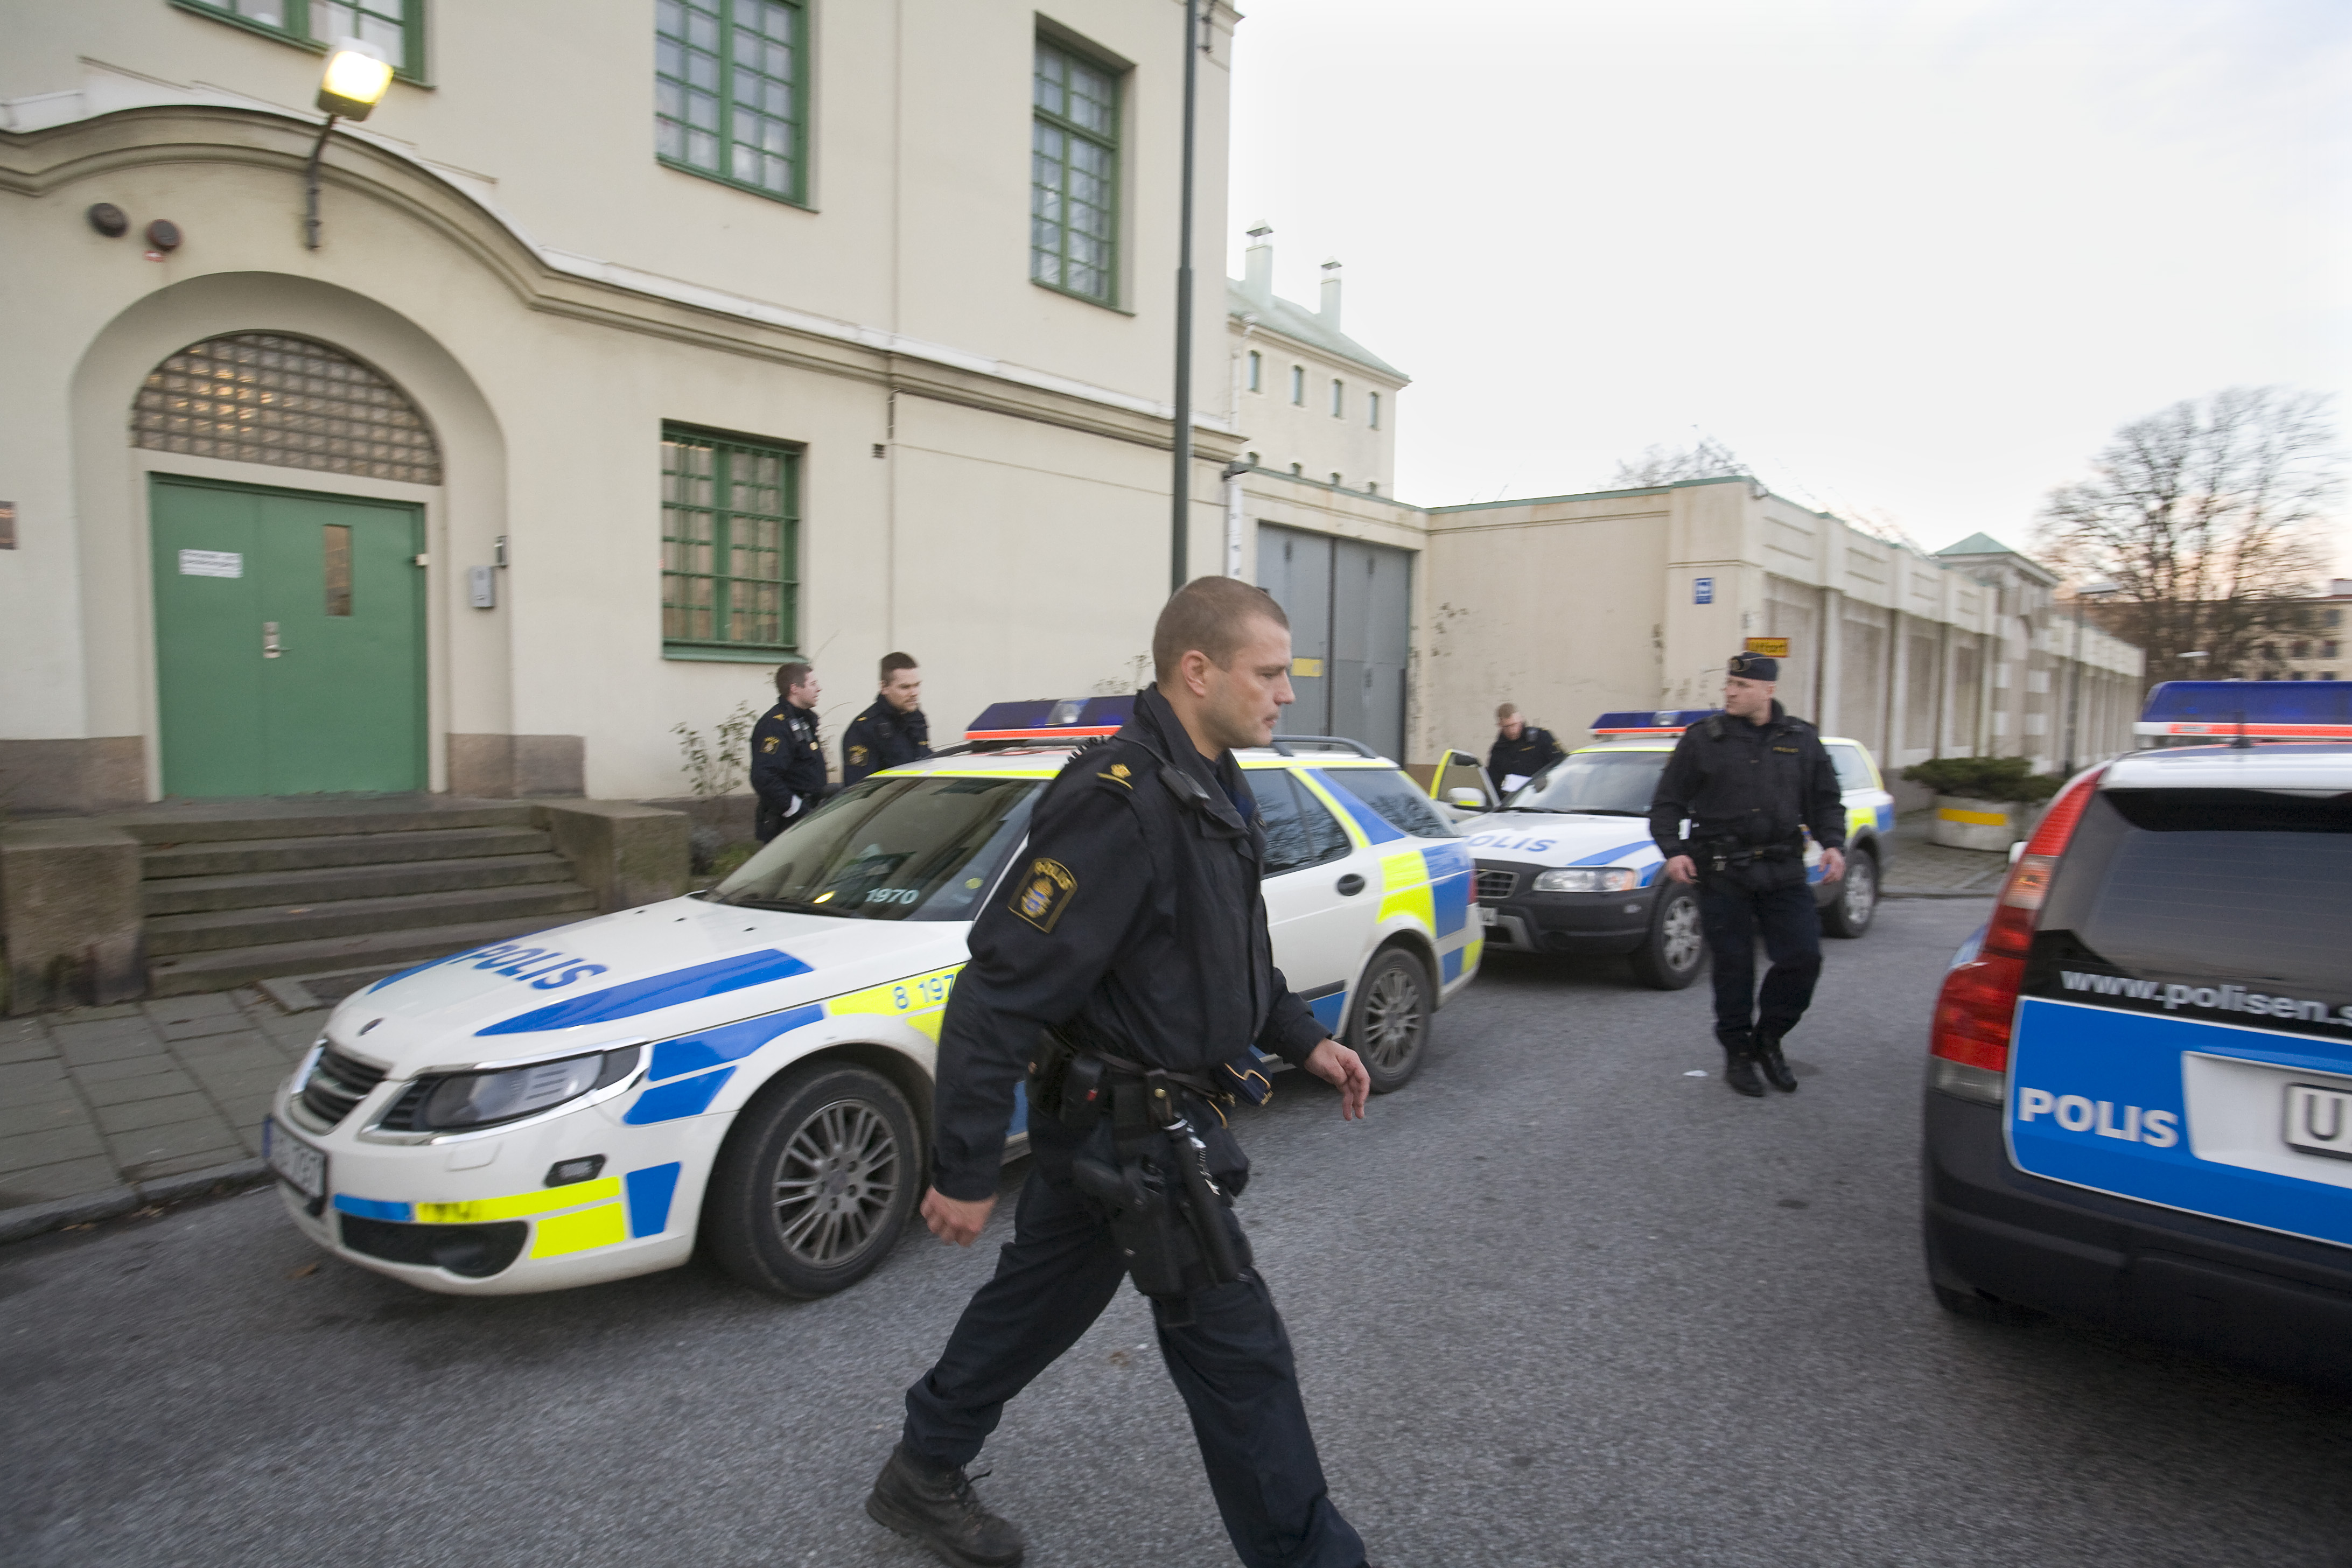 Polis från Motala, Mjölby och Linköping kallades till platsen. Bilden är tagen vid ett tidigare tillfälle.